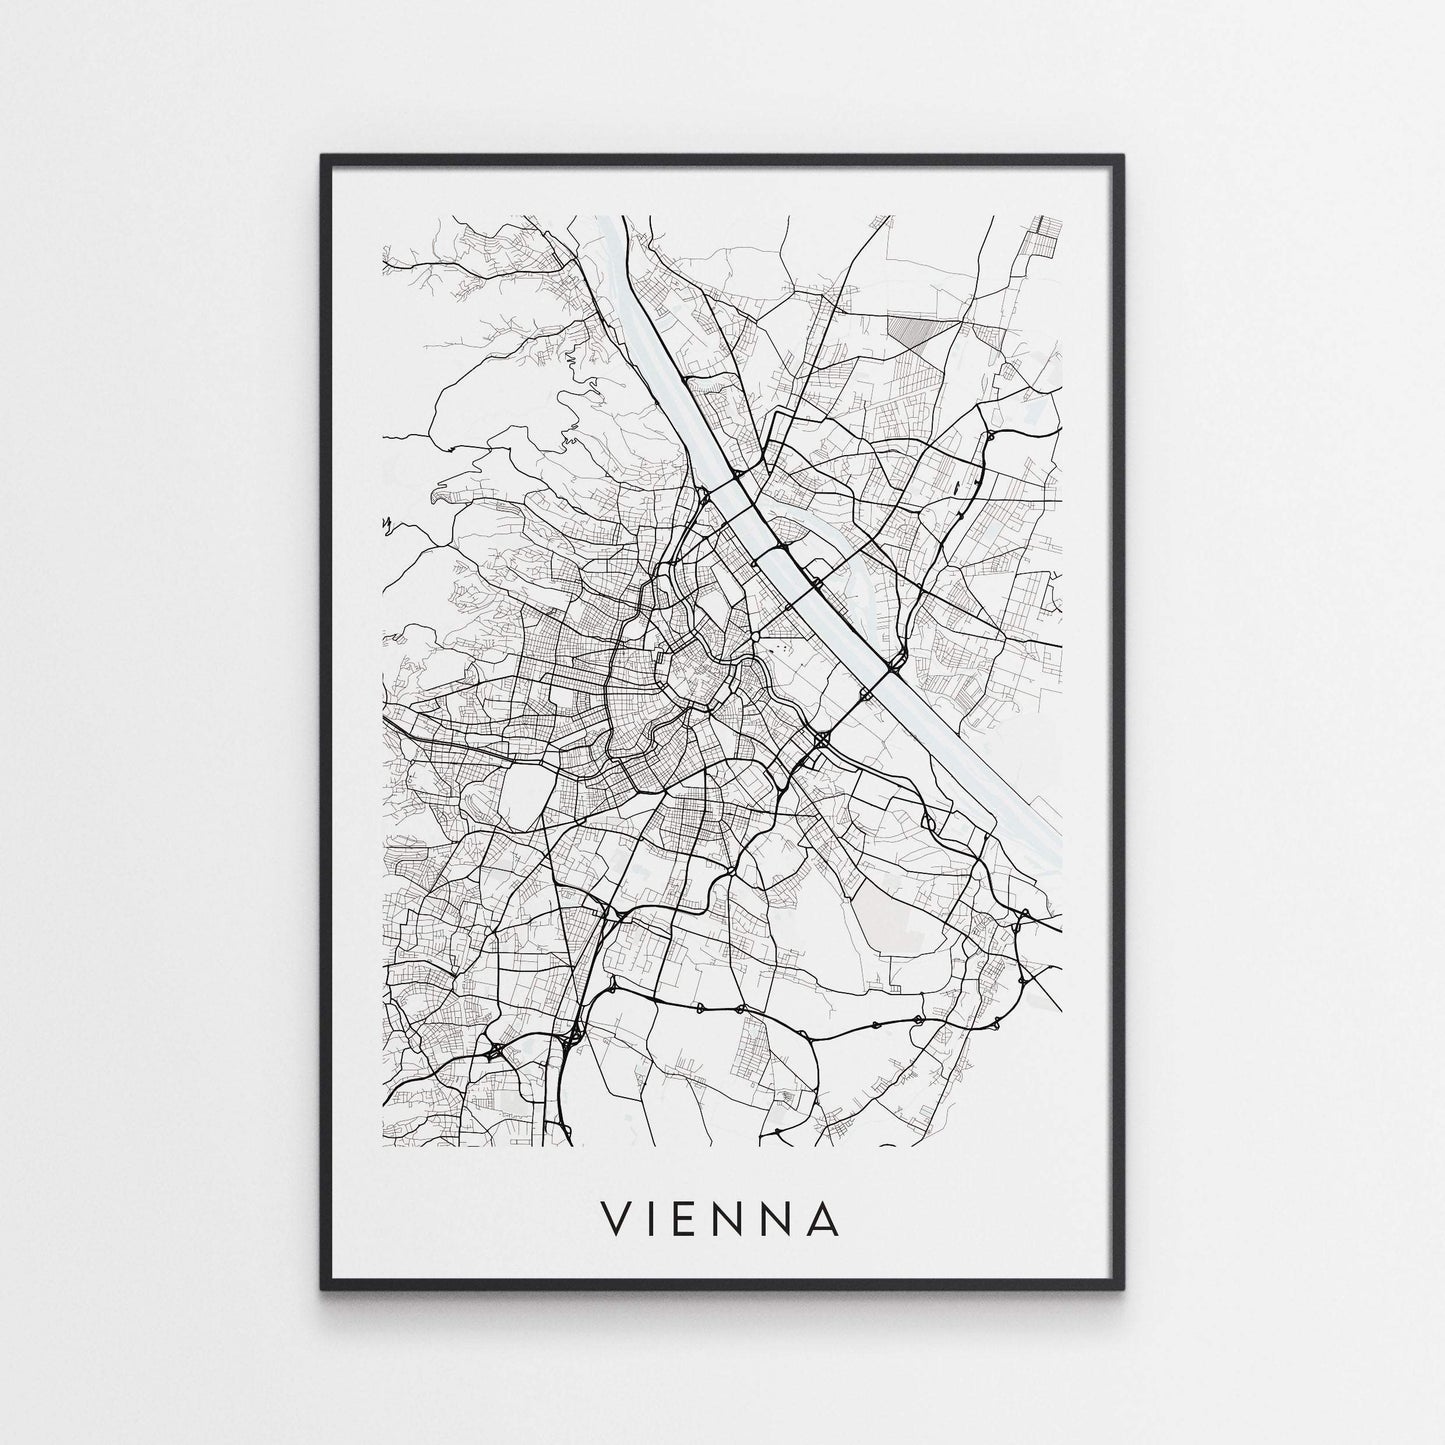 Vienna Map Print - Austria